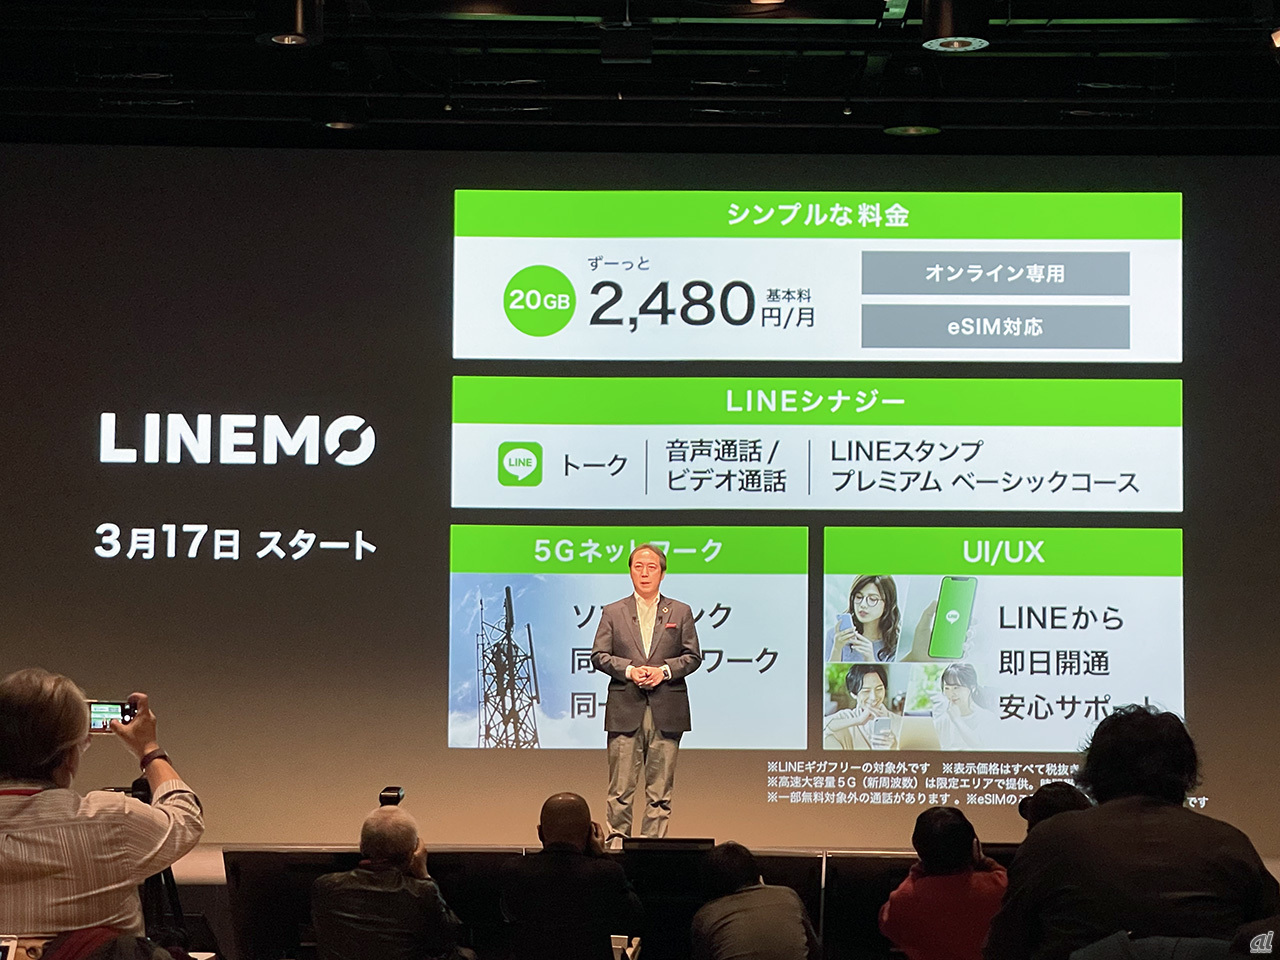 ソフトバンク 新ブランド Linemo 発表 月2480円に値下げ Lineなら通話し放題 Cnet Japan